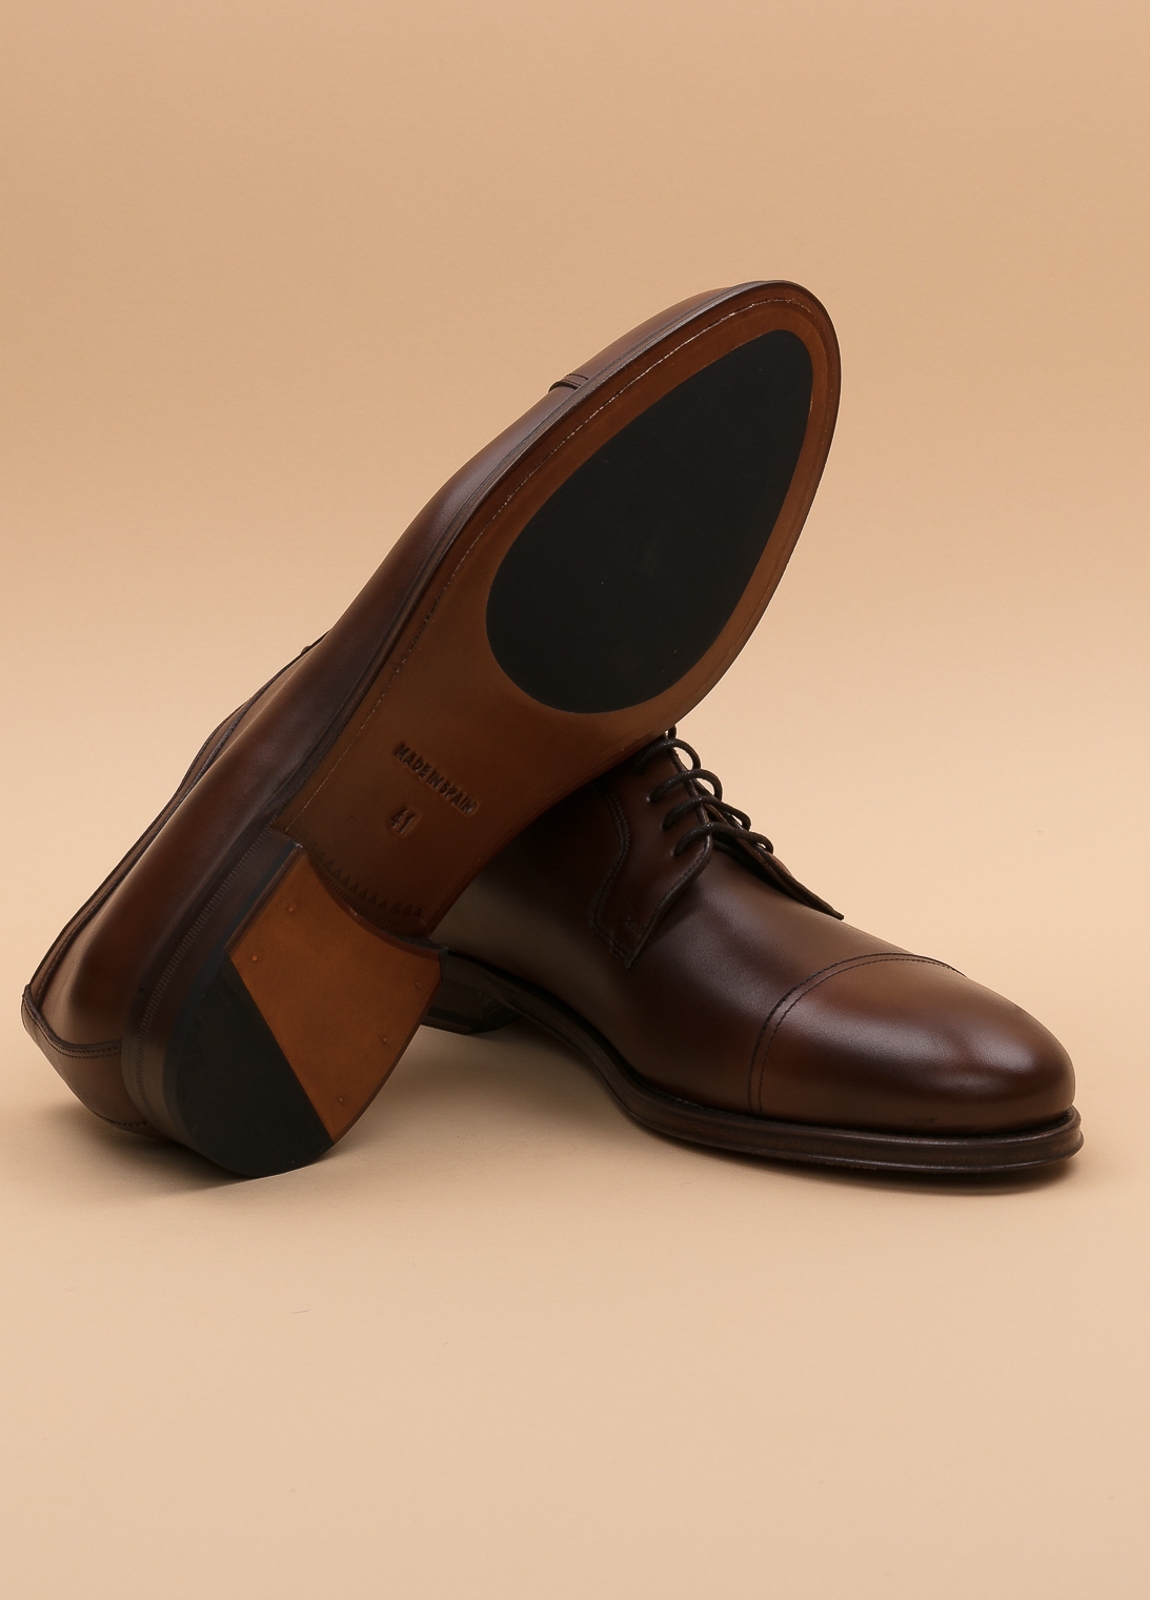 Zapato Formal Wear FUREST COLECCIÓN marrón - Ítem4